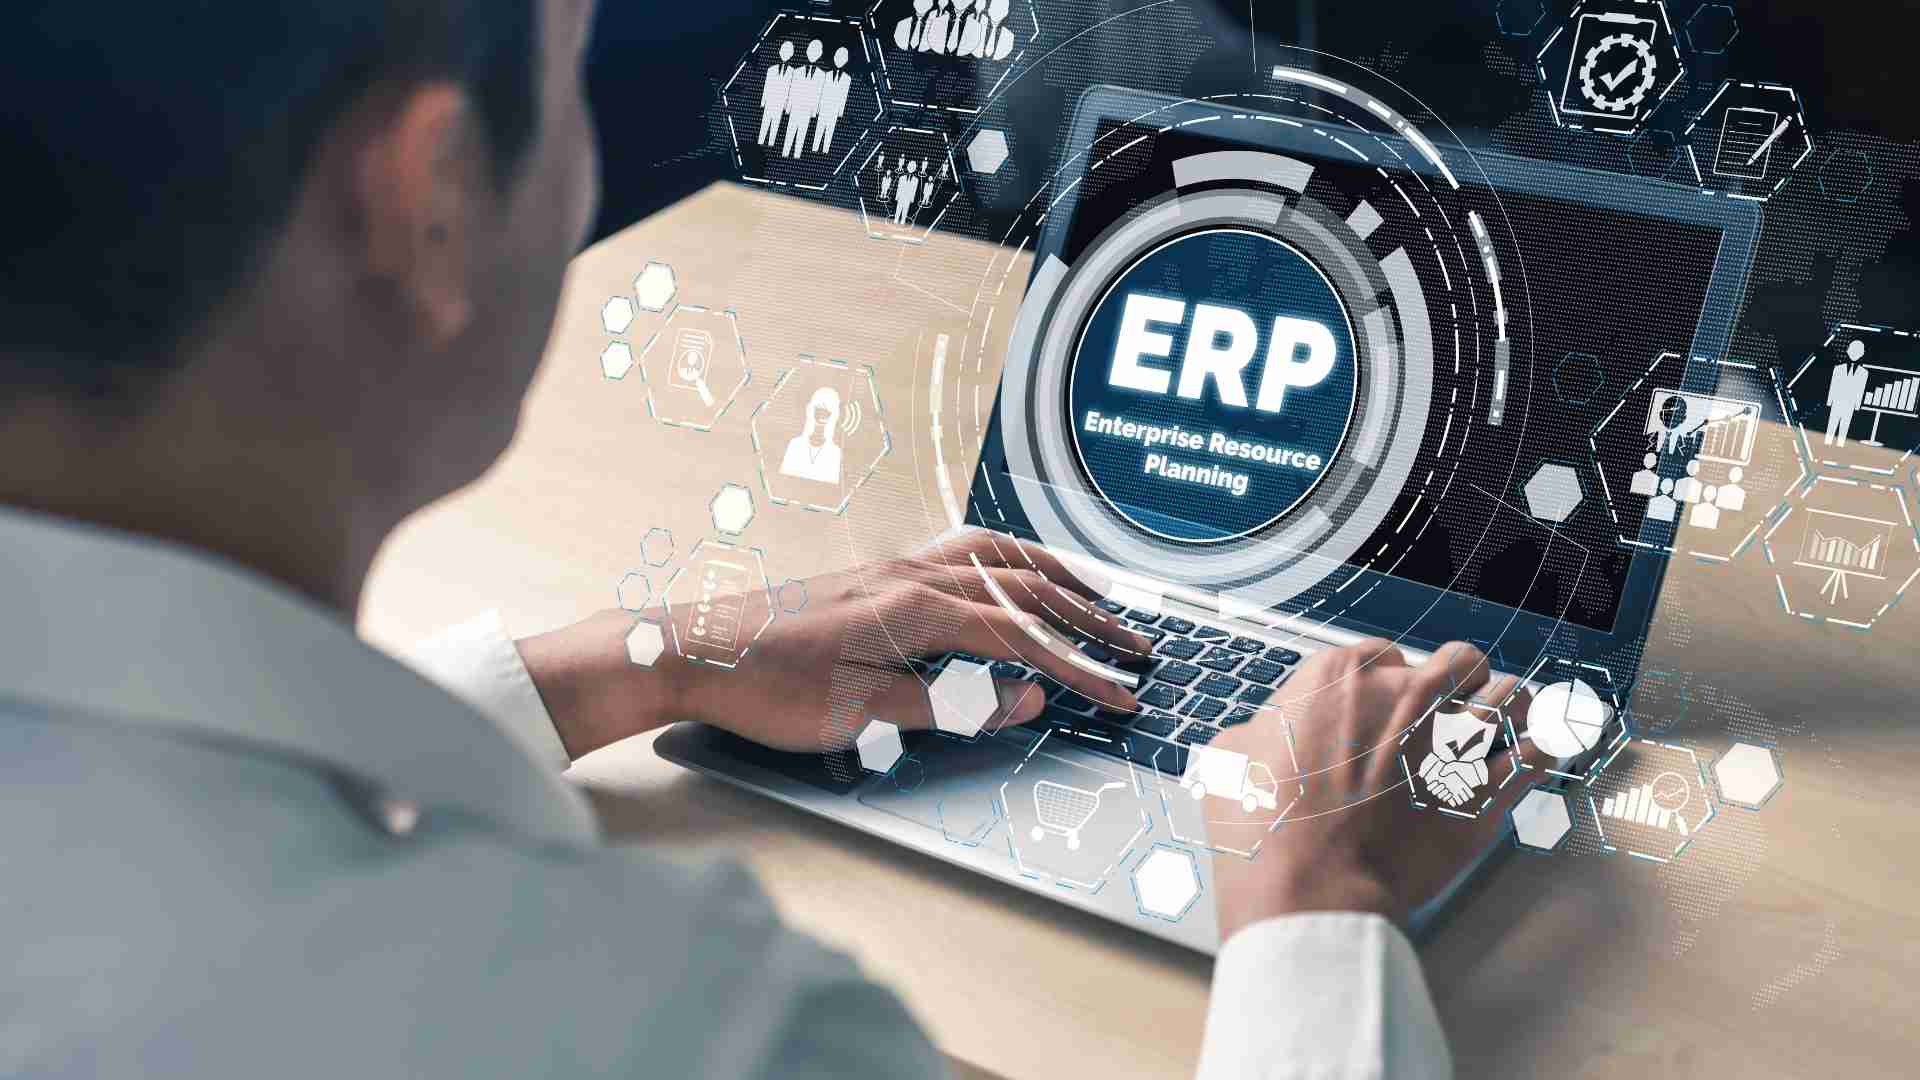 نظام تخطيط موارد المؤسسات ERP ودوره في تنمية الأعمال